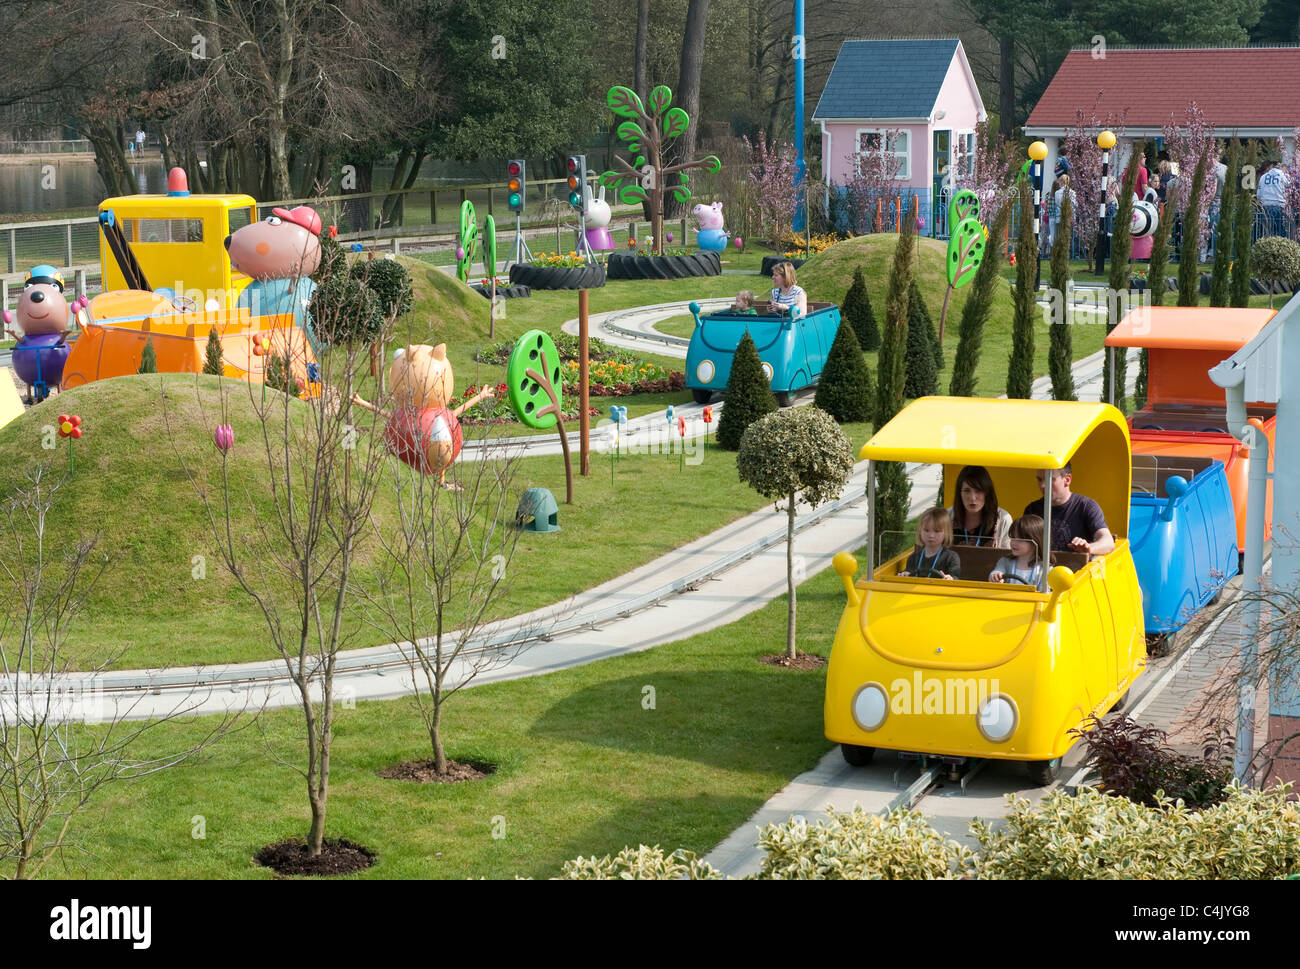 Peppa Pig world at Paultons Family Theme Park près de Southampton, Angleterre , Royaume-Uni Banque D'Images